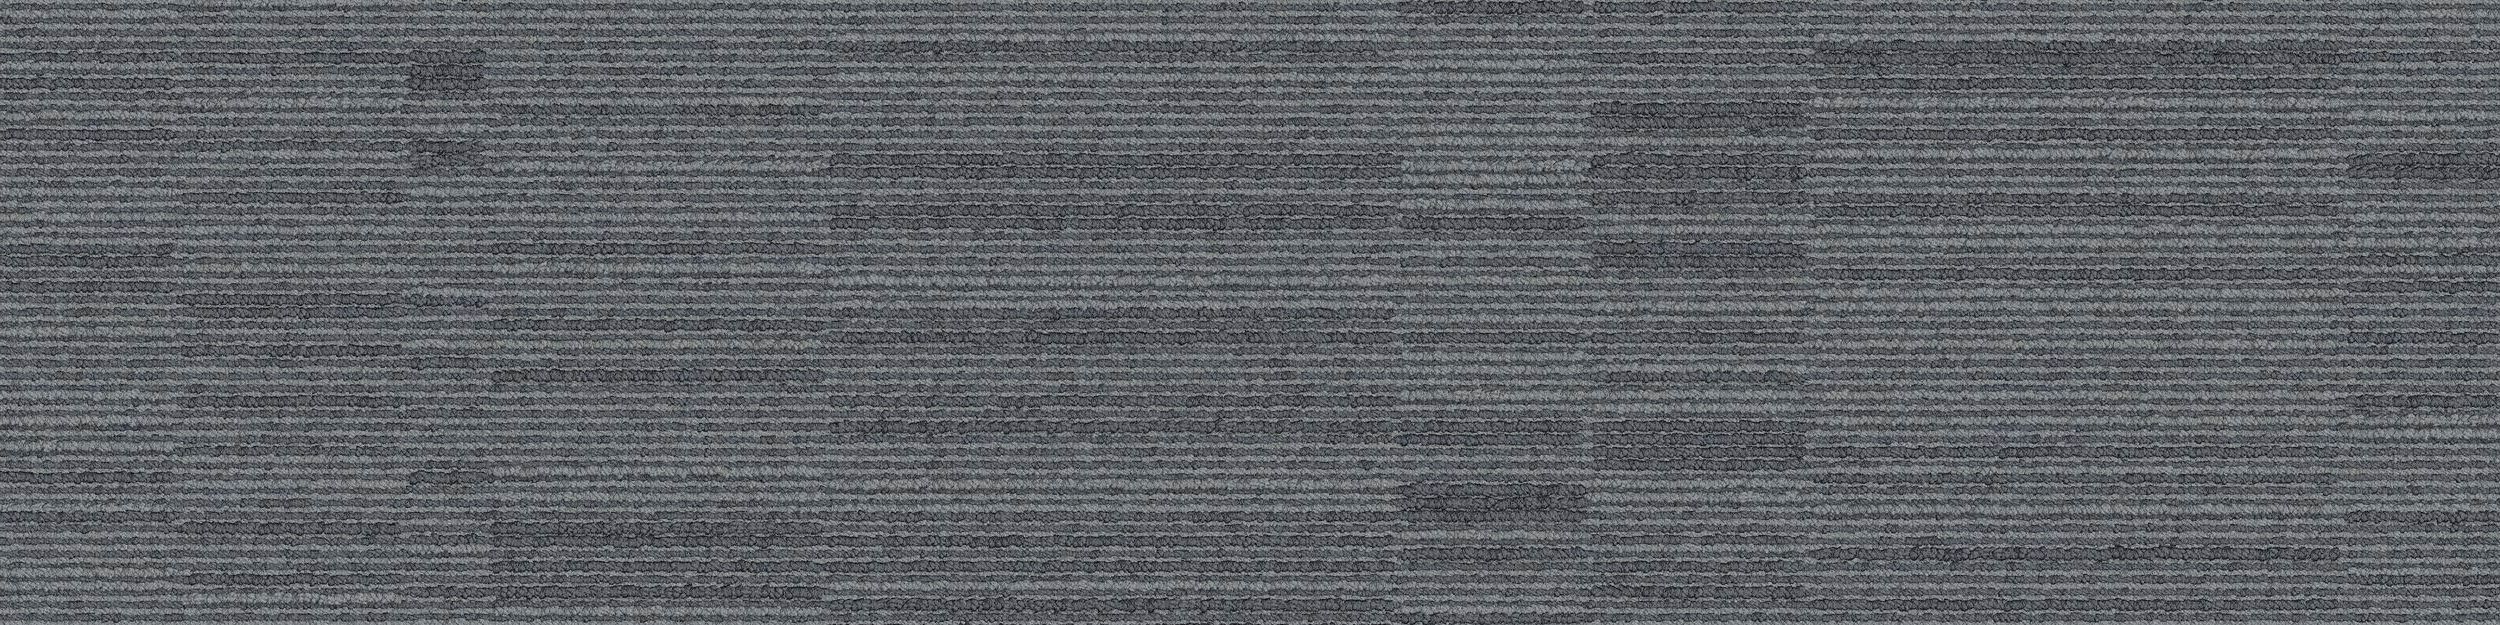 B702 Carpet Tile In North Sea numéro d’image 2